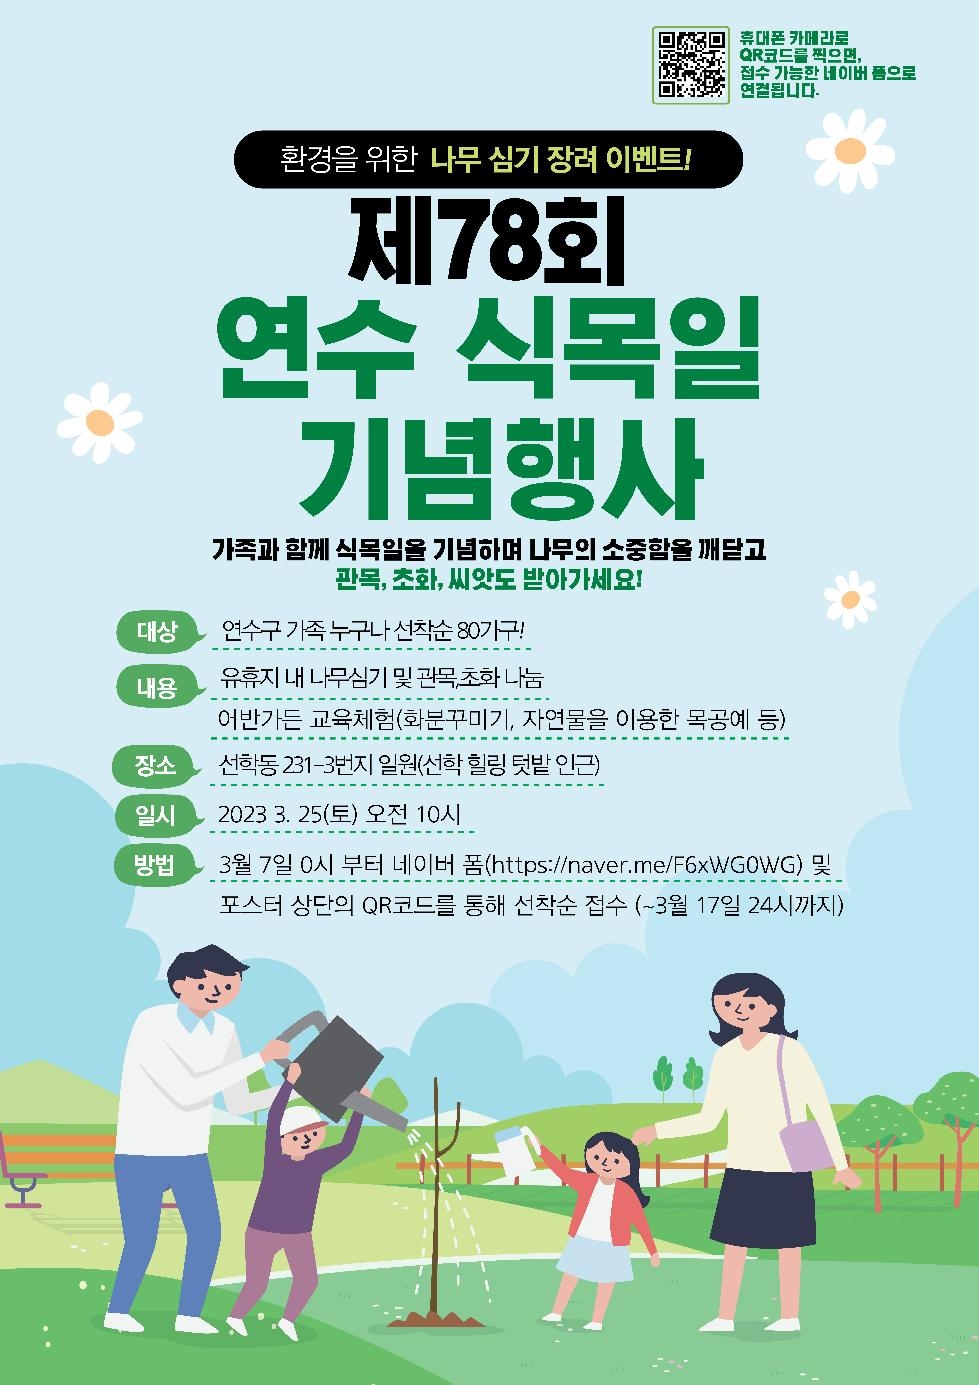 인천 연수구, 제78회 연수 식목일 기념행사 가족참여자 모집